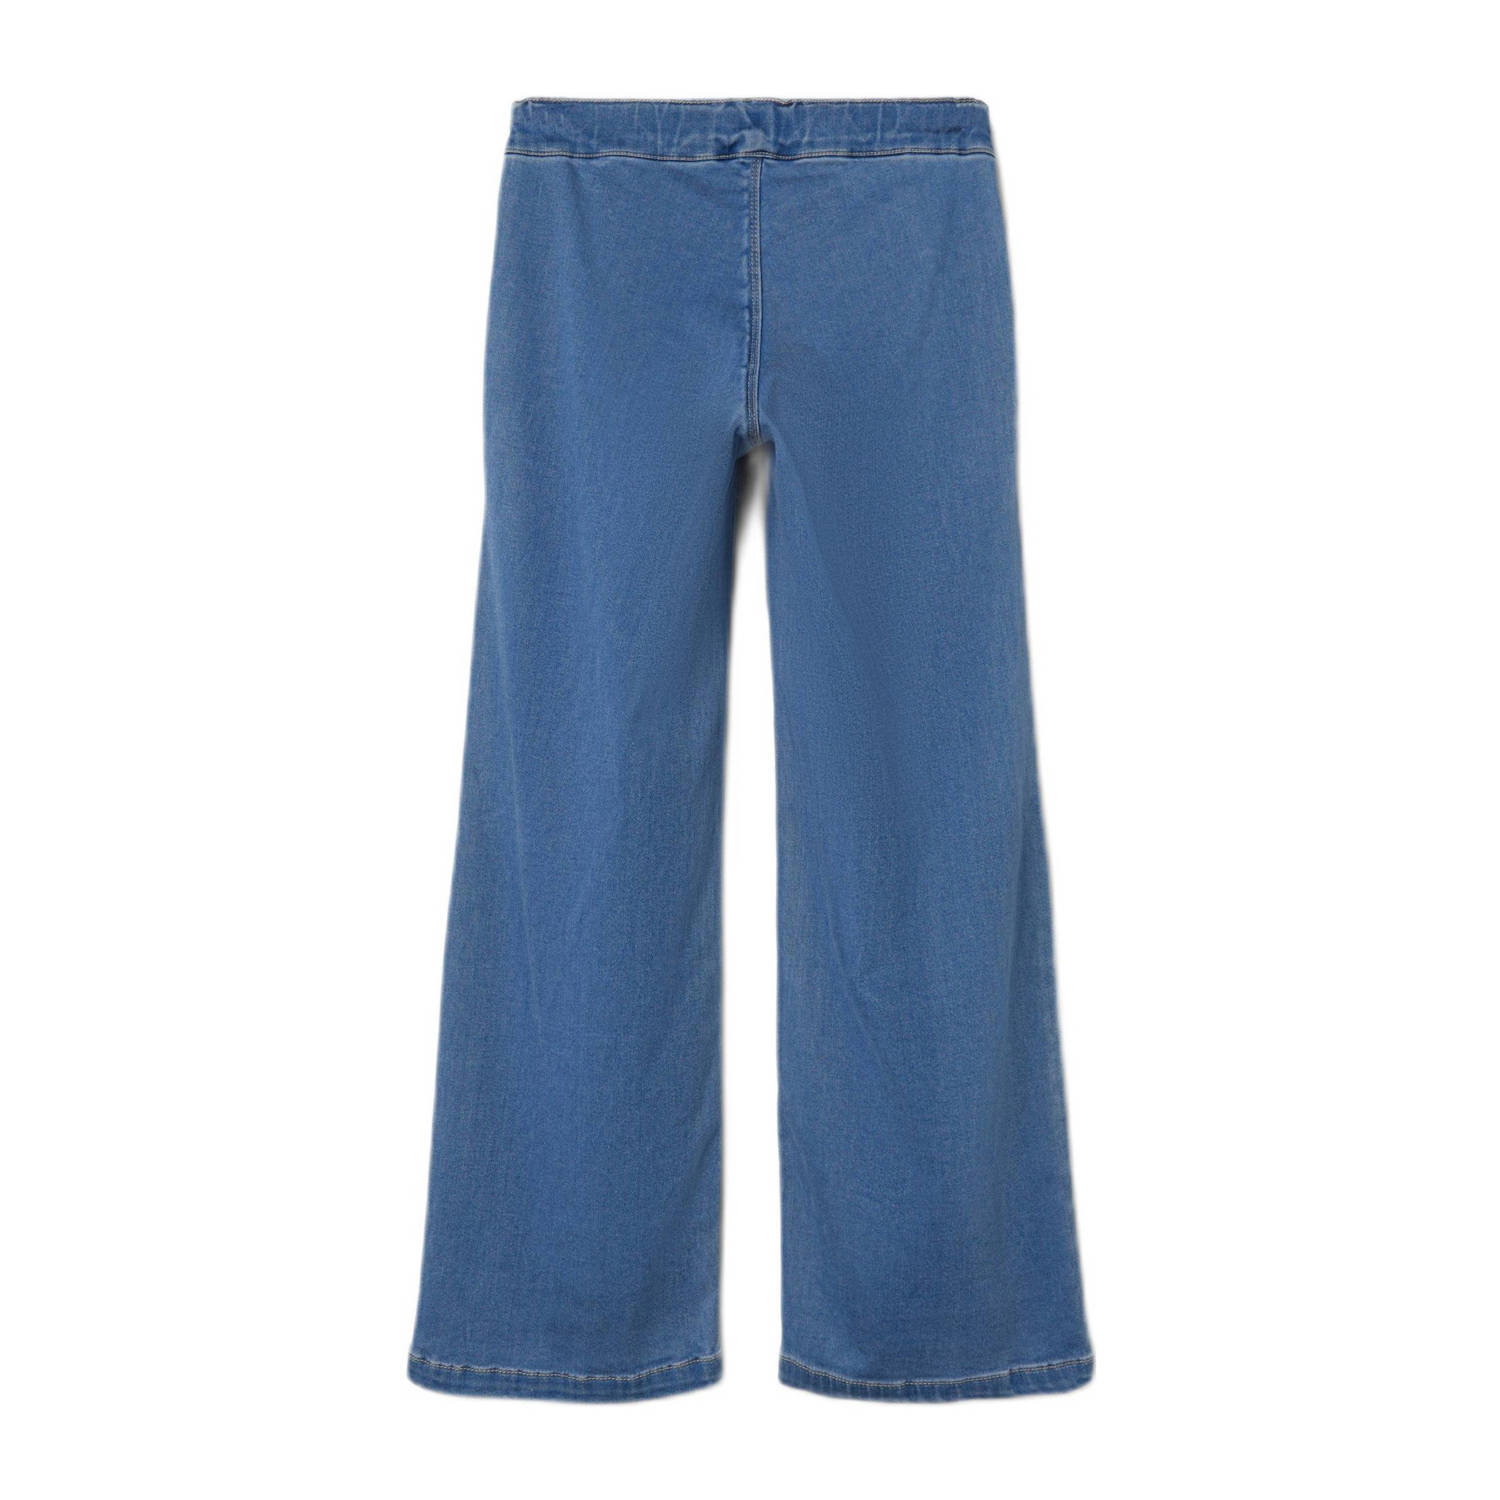 NAME IT KIDS flared jeans NKFSALLI light blue denim